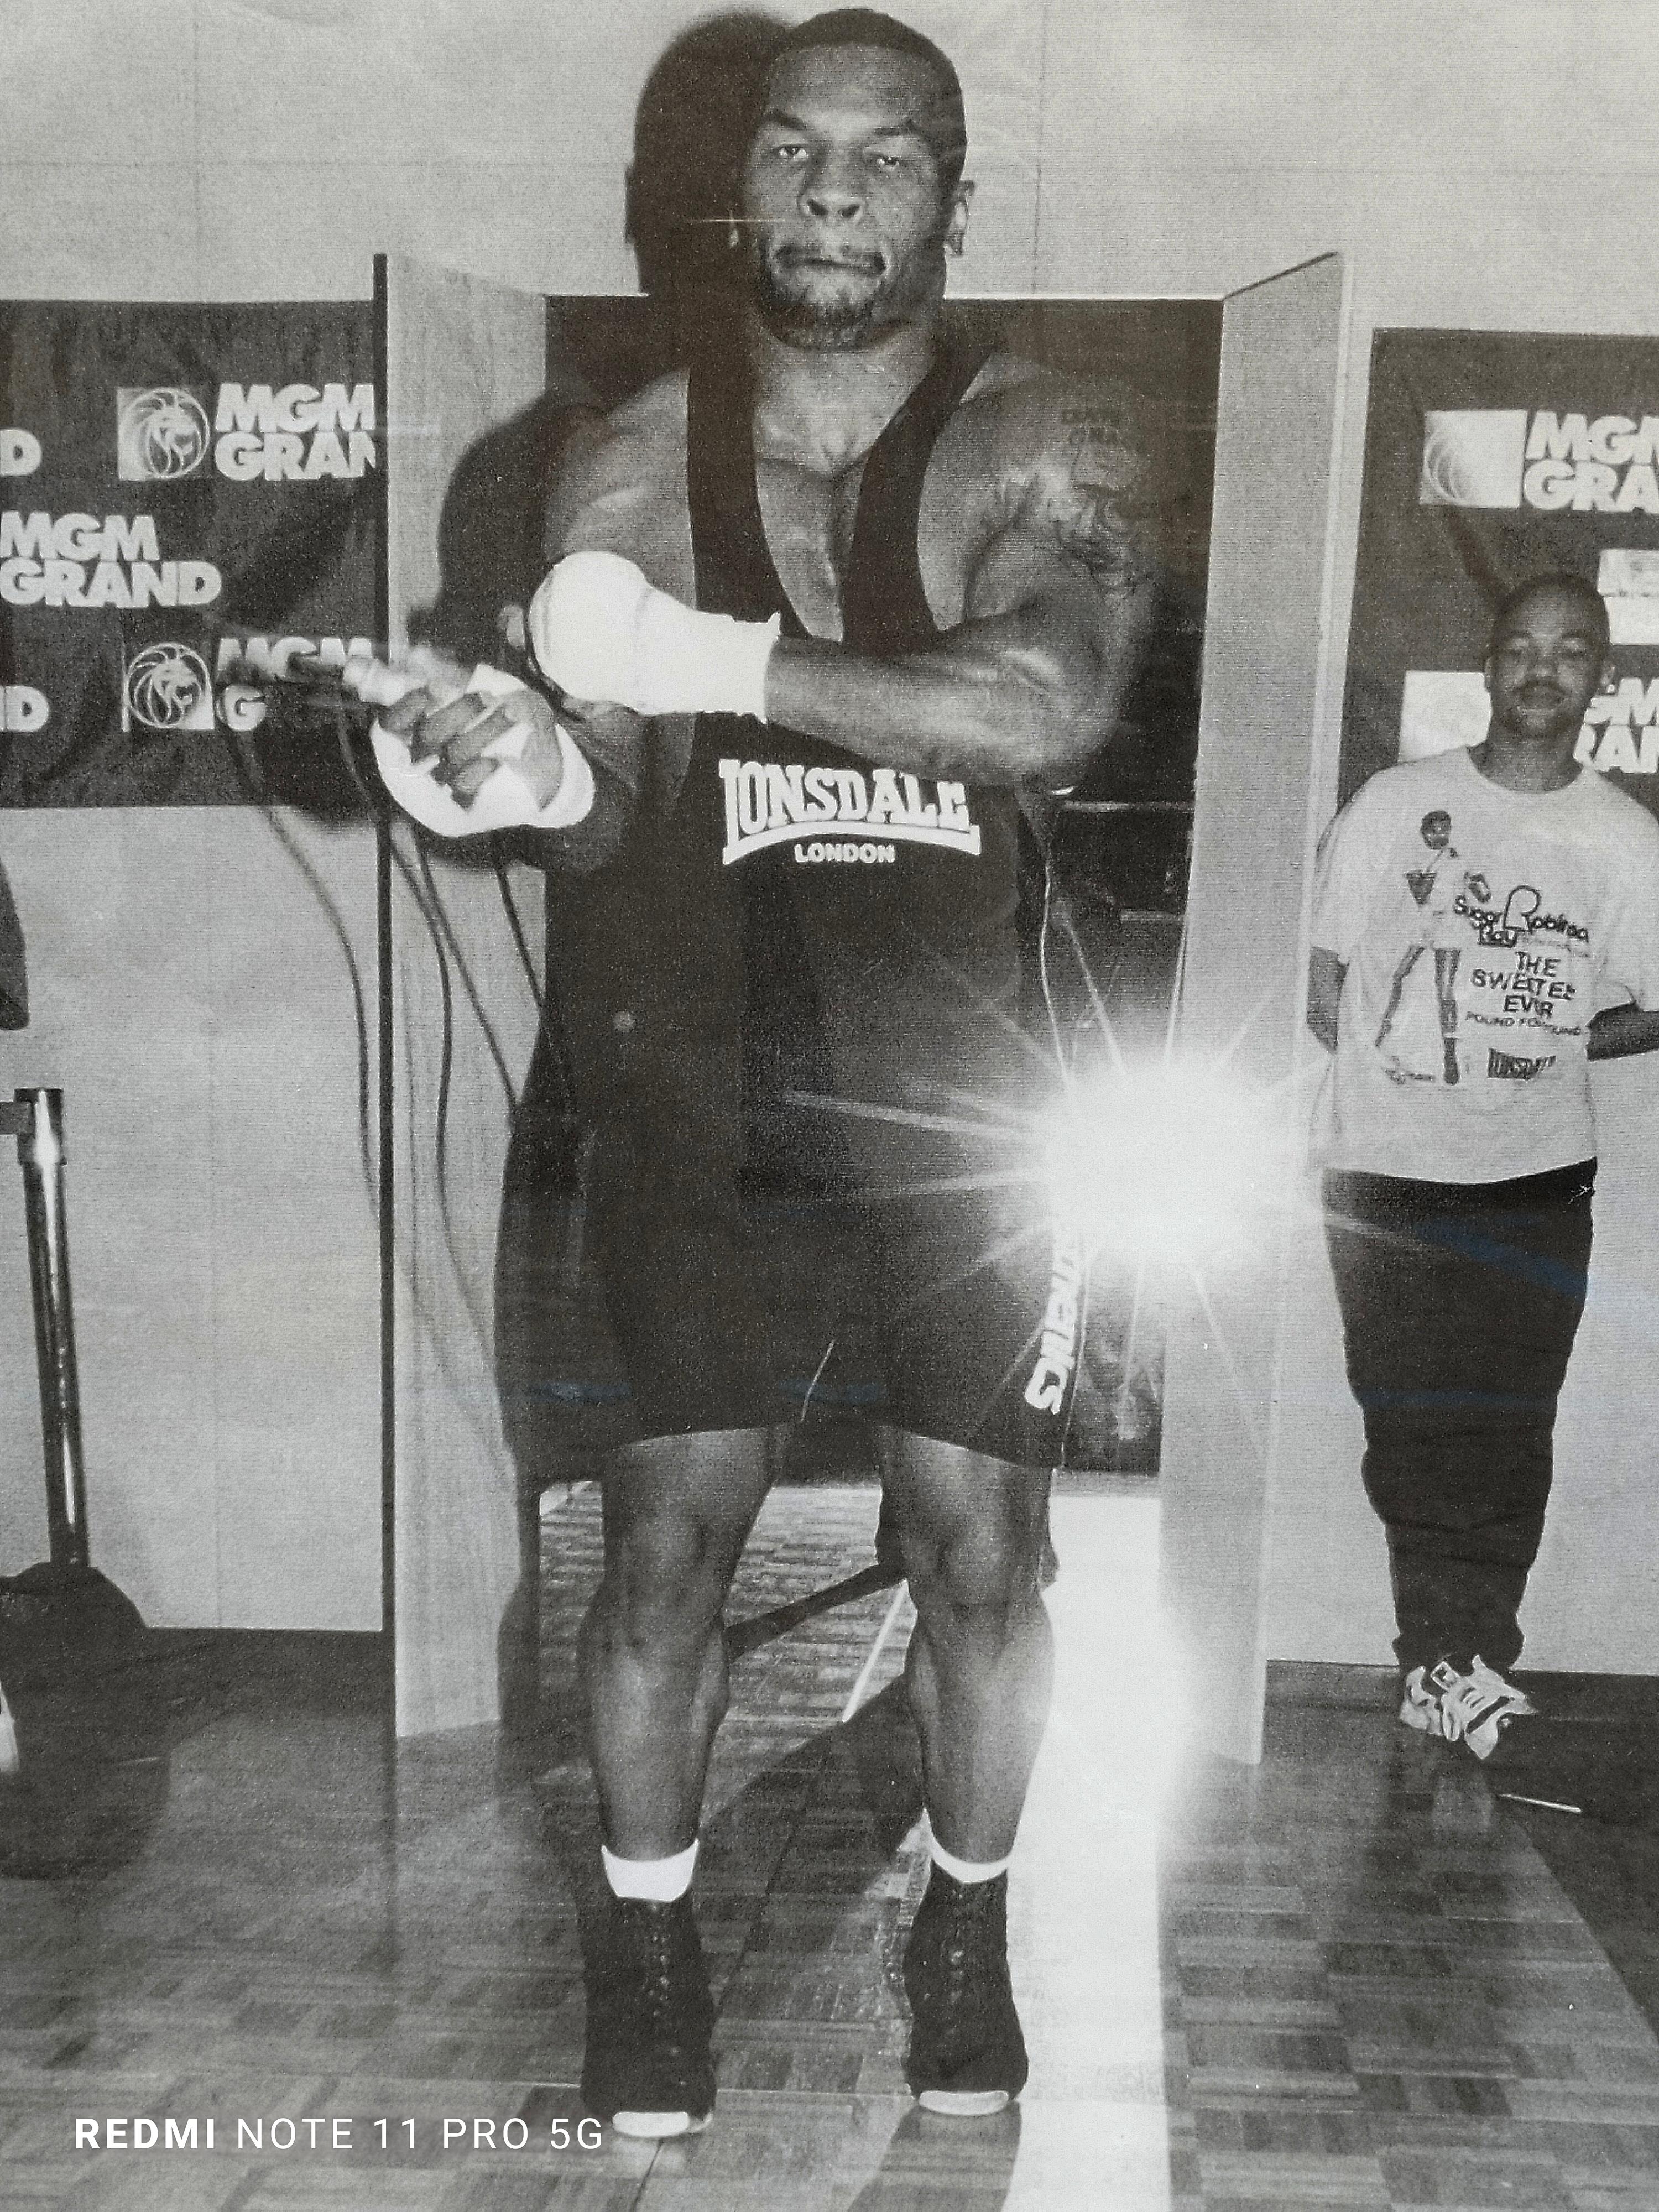 Stampa su carta in bianco e nero del pugile Mike Tyson, con cornice